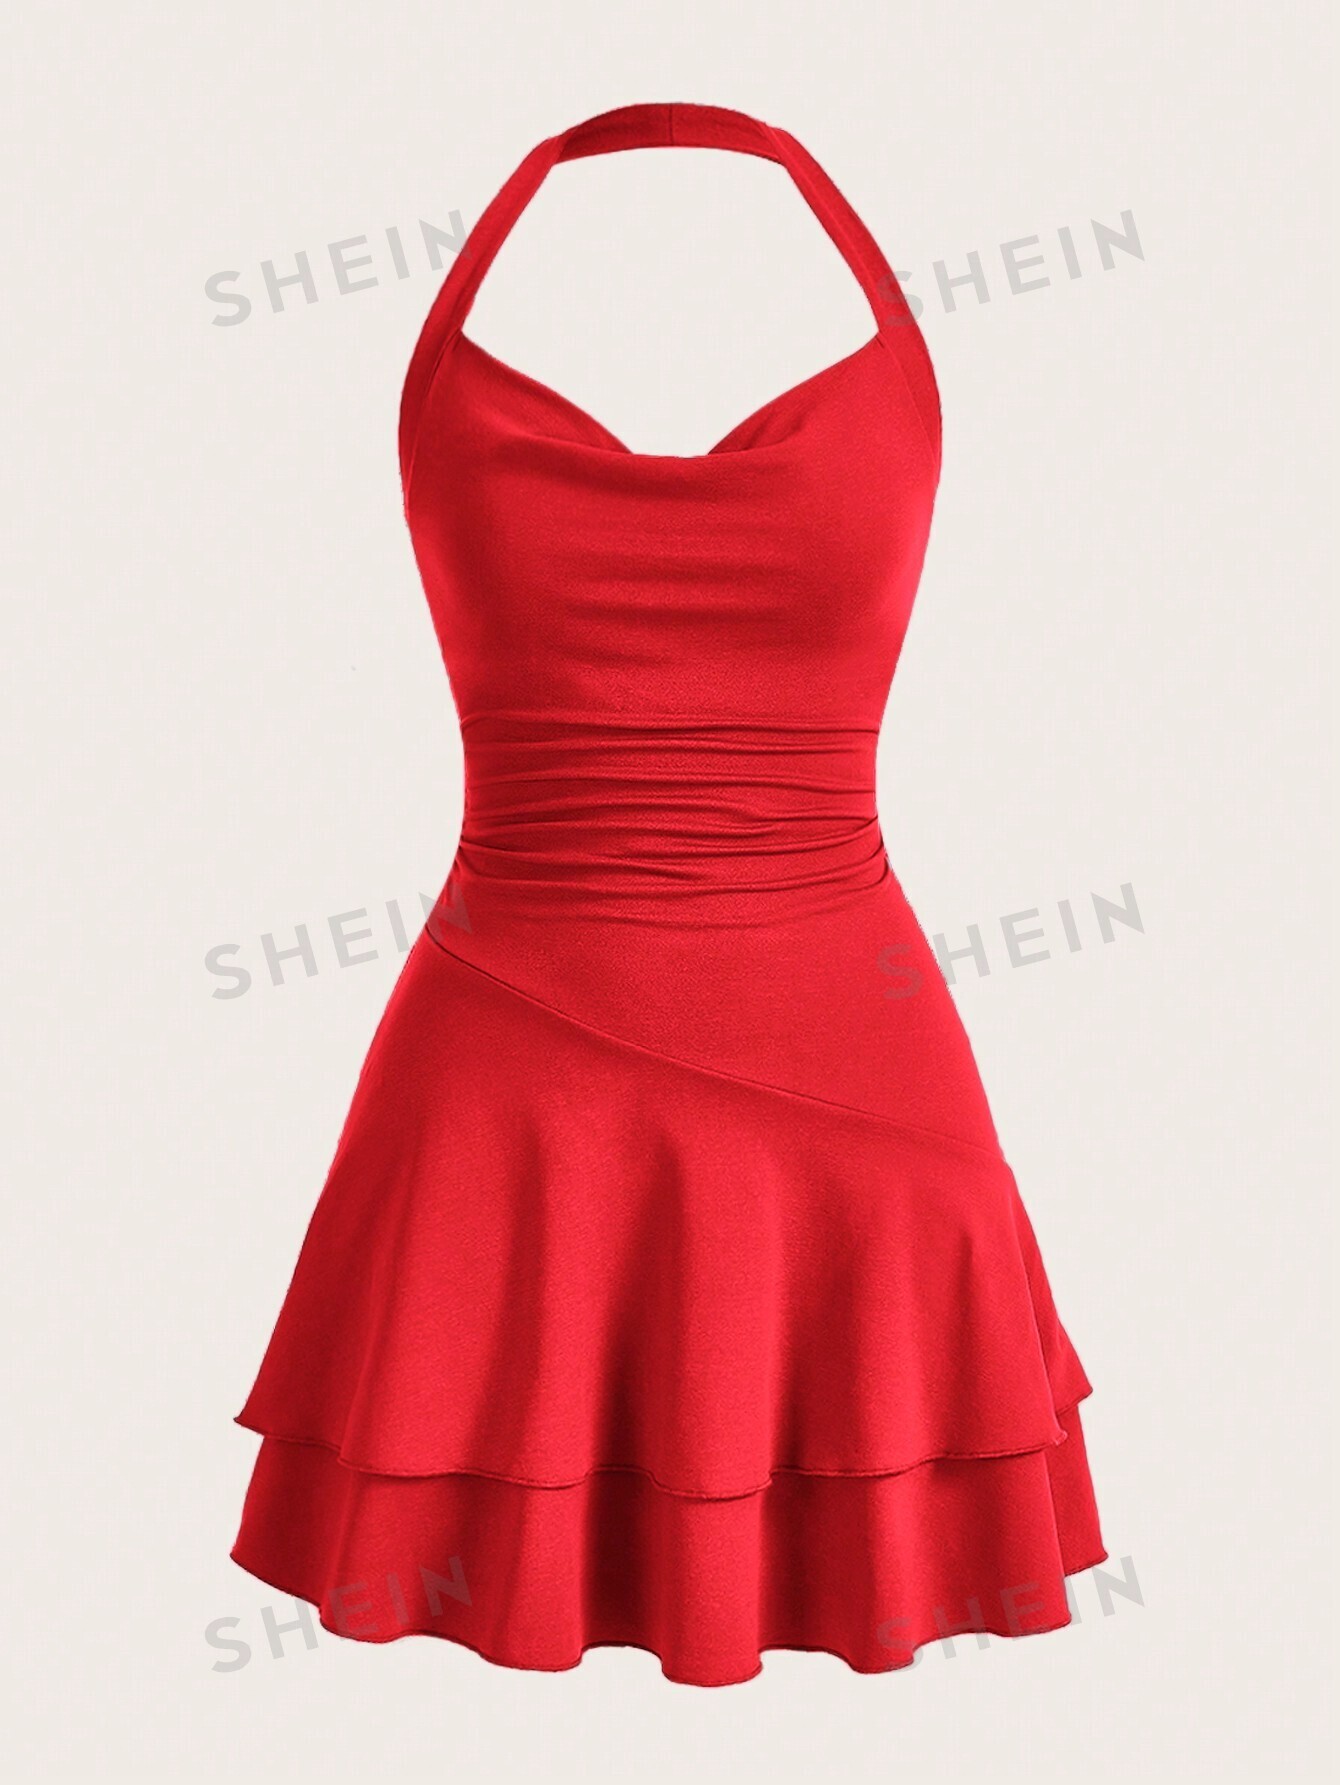 SHEIN MOD однотонное женское платье с бретелькой на шее и многослойным подолом, красная роза цена и фото